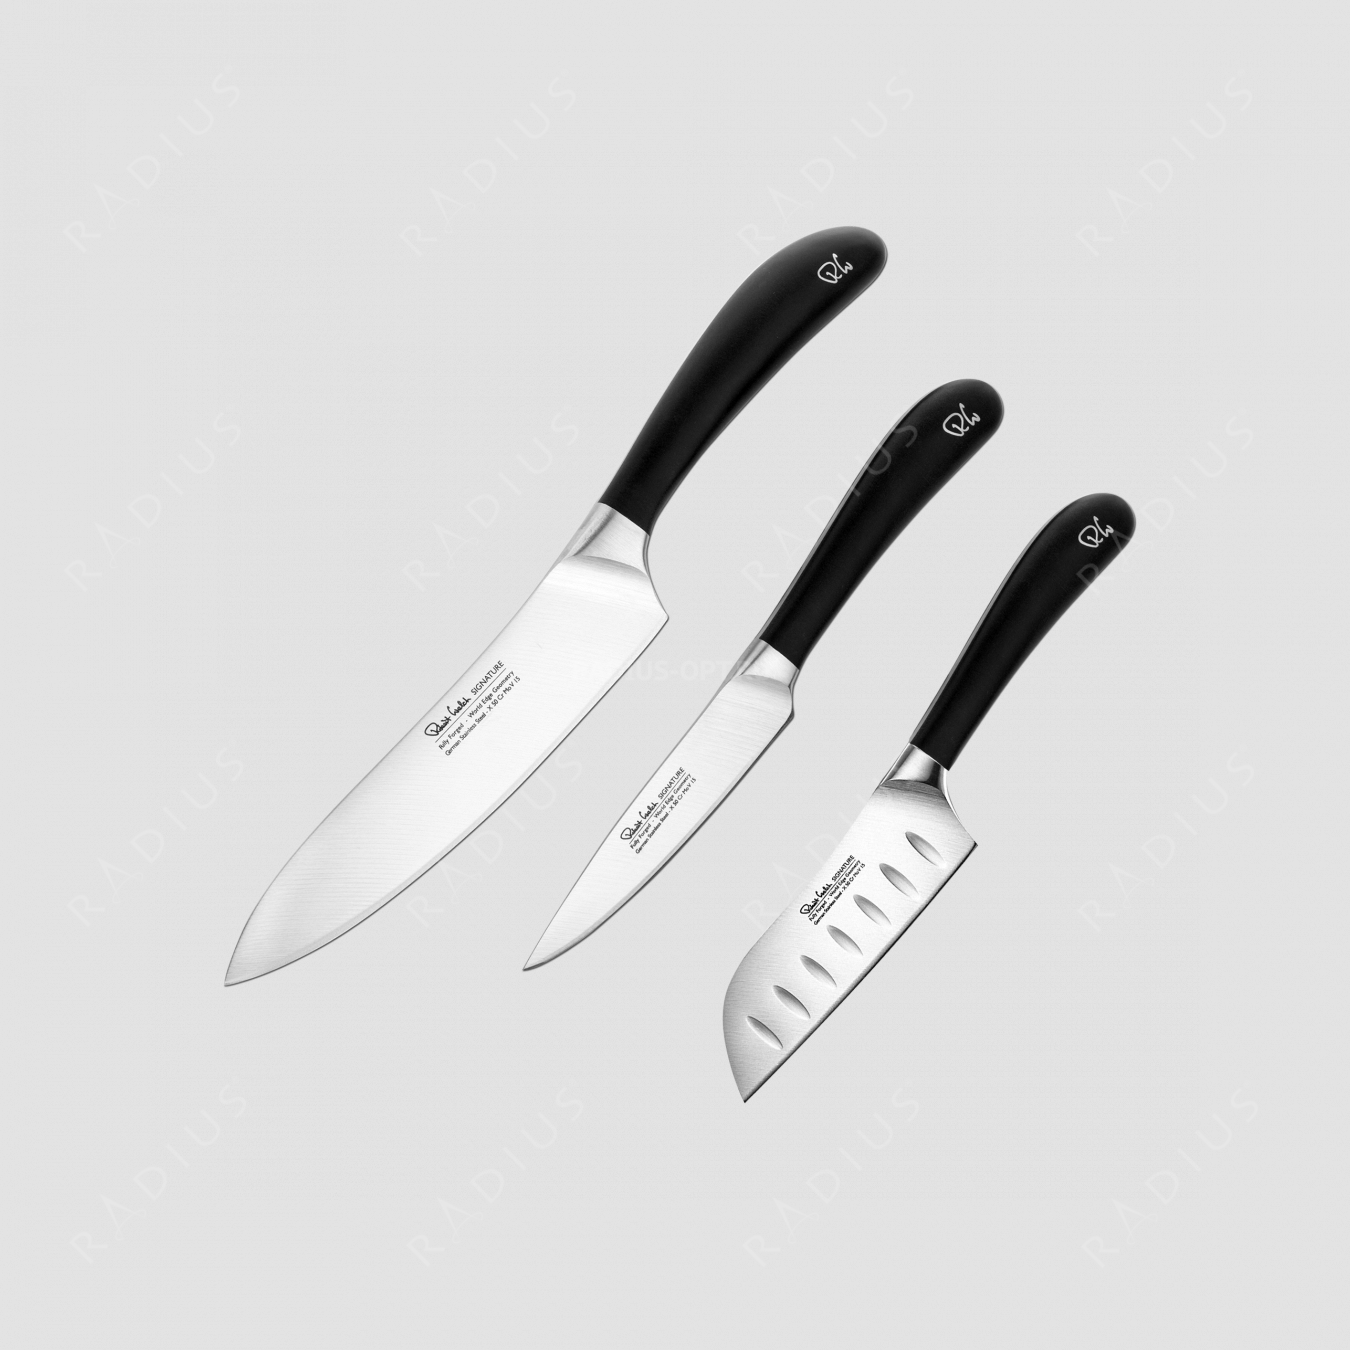 Набор кухонных ножей, 3 штуки, серия Signature knife, ROBERT WELCH, Великобритания